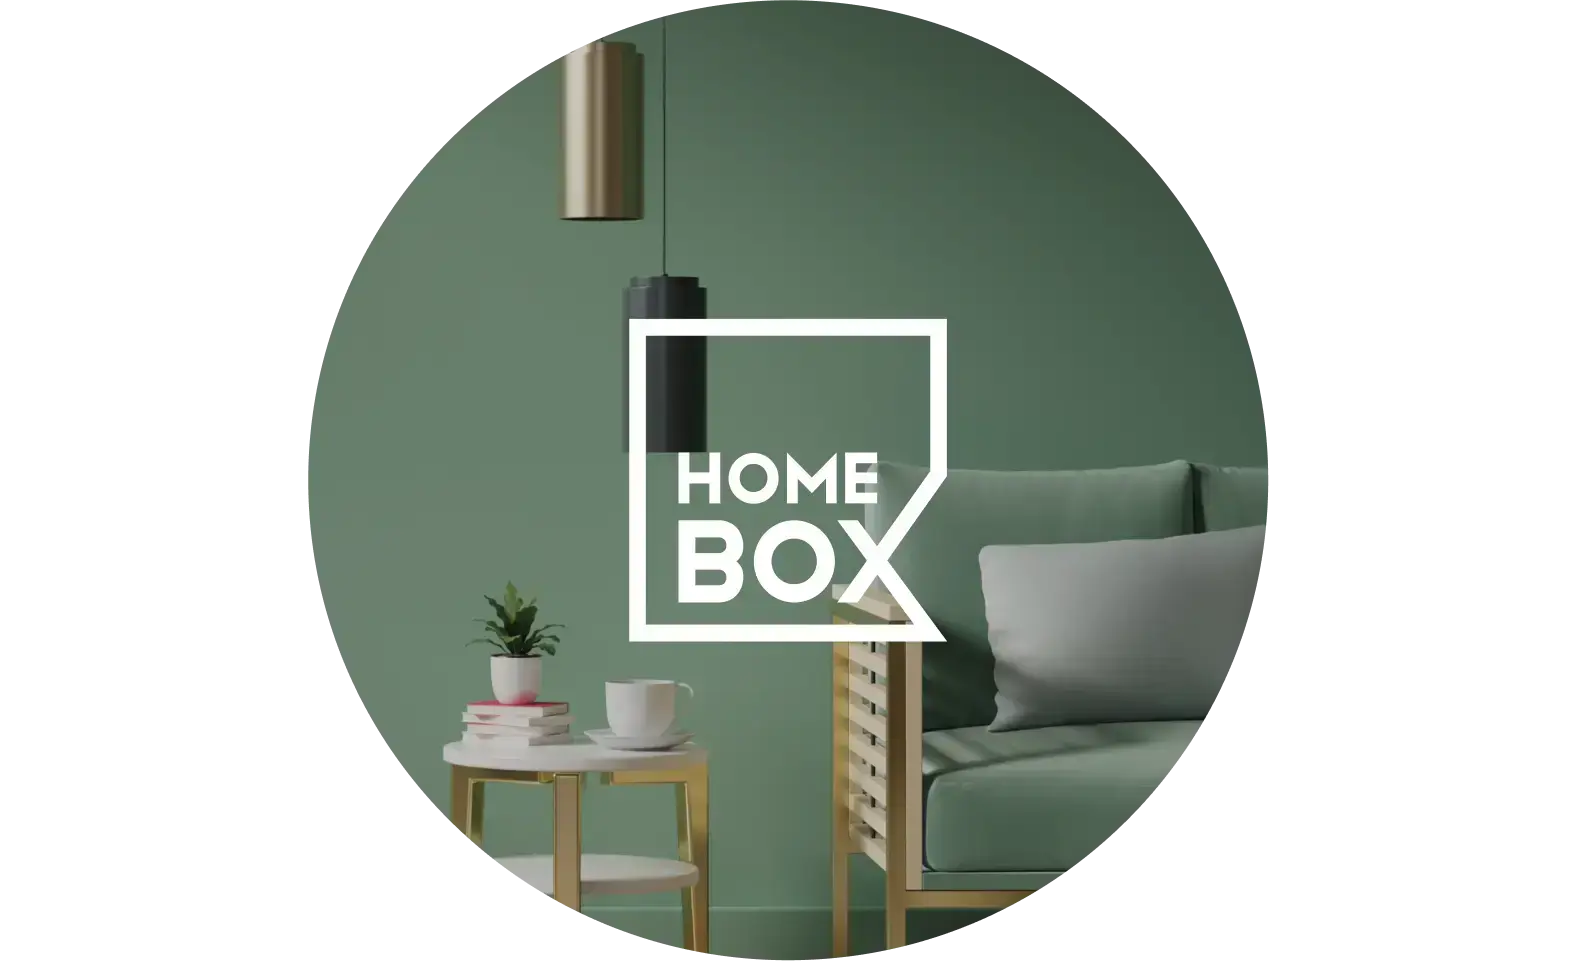 Home Box grows their AOV by 180%